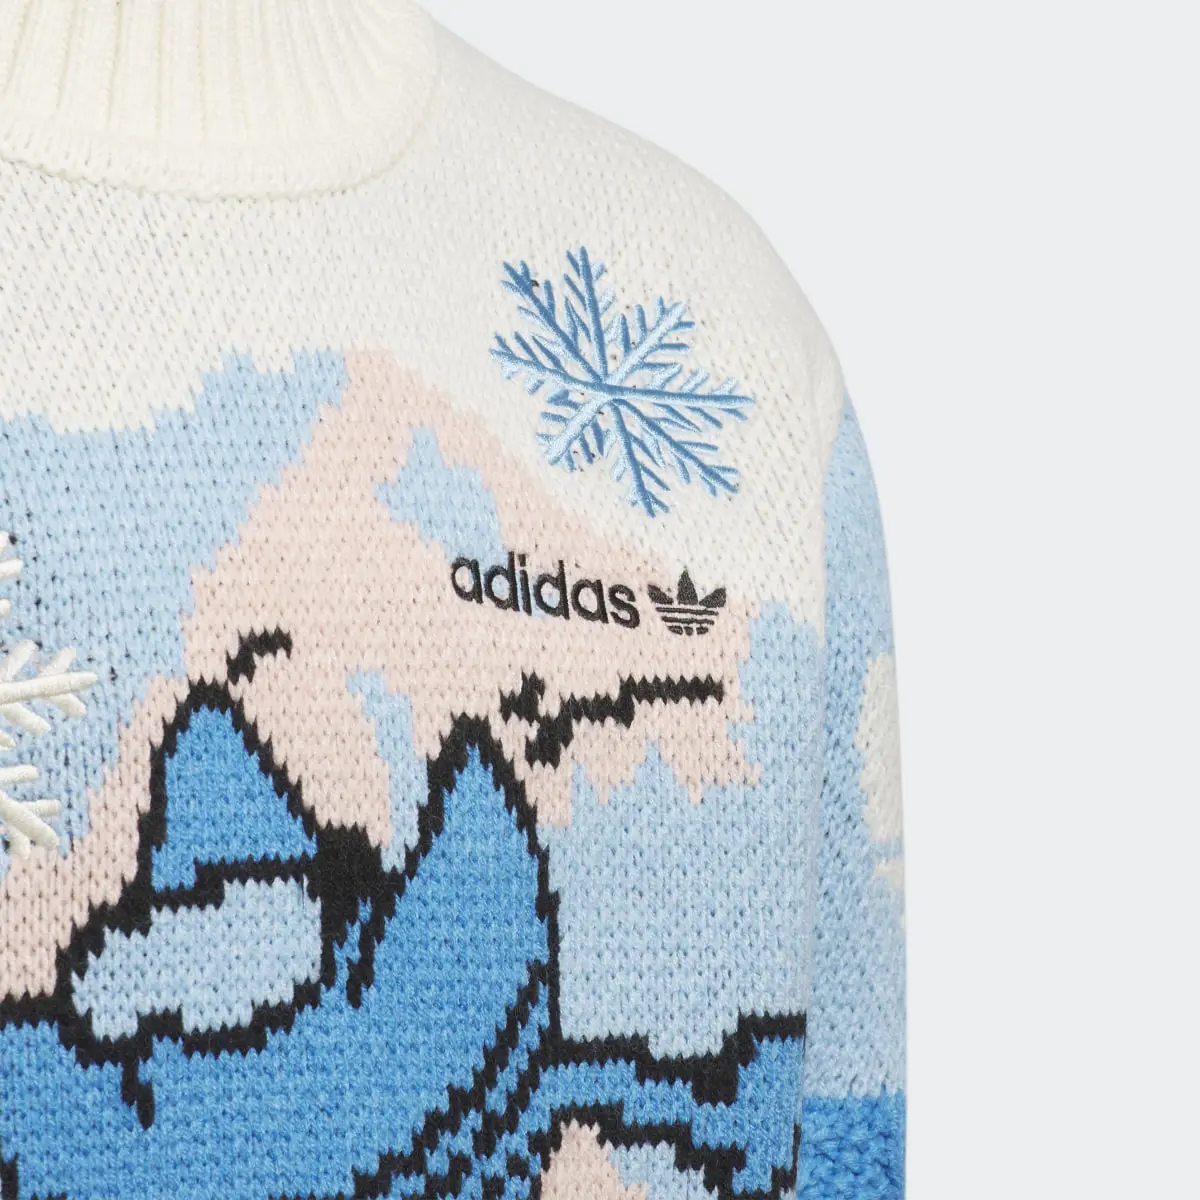 Adidas Xmas Sweater. 3